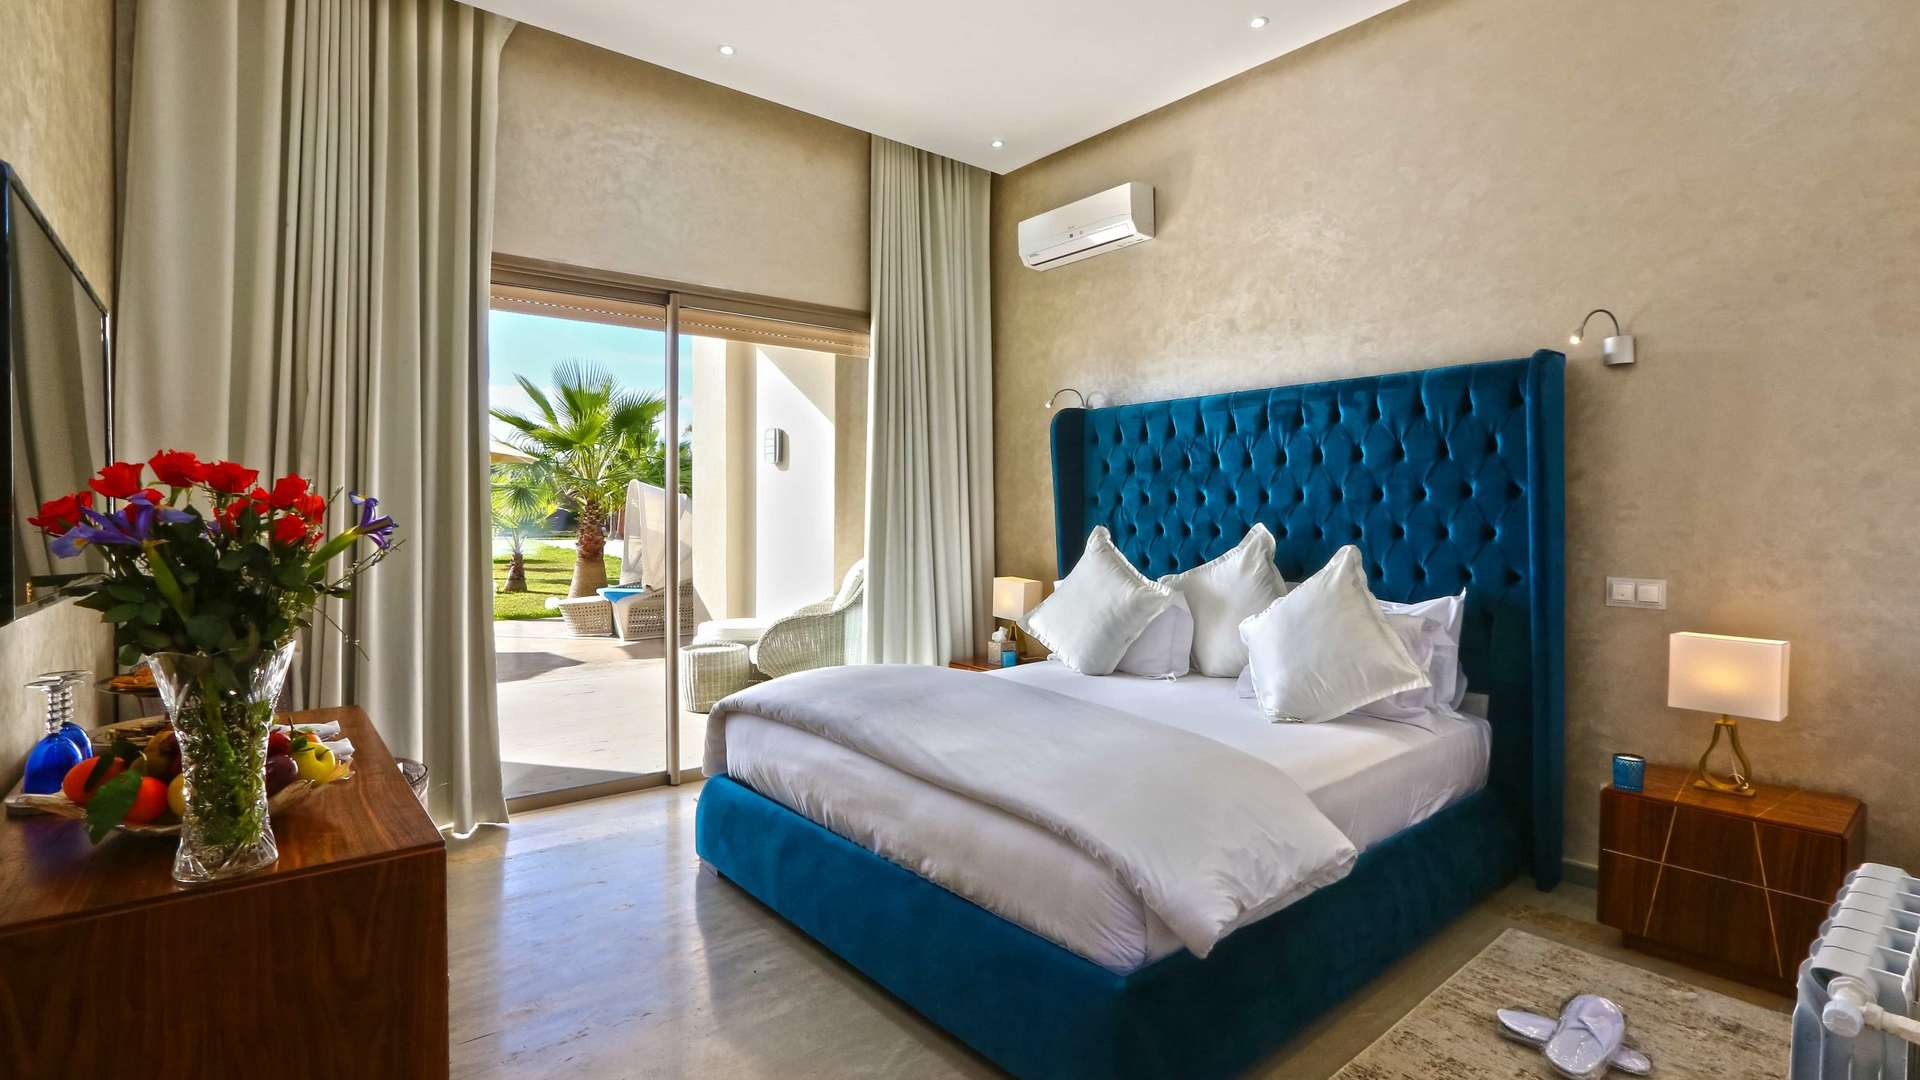 Location de vacances,Villa,Location Saisonnière d'Exception : Palace de prestige avec 8 suites et salle de célébrations polyvalente,Marrakech,Route Amizmiz